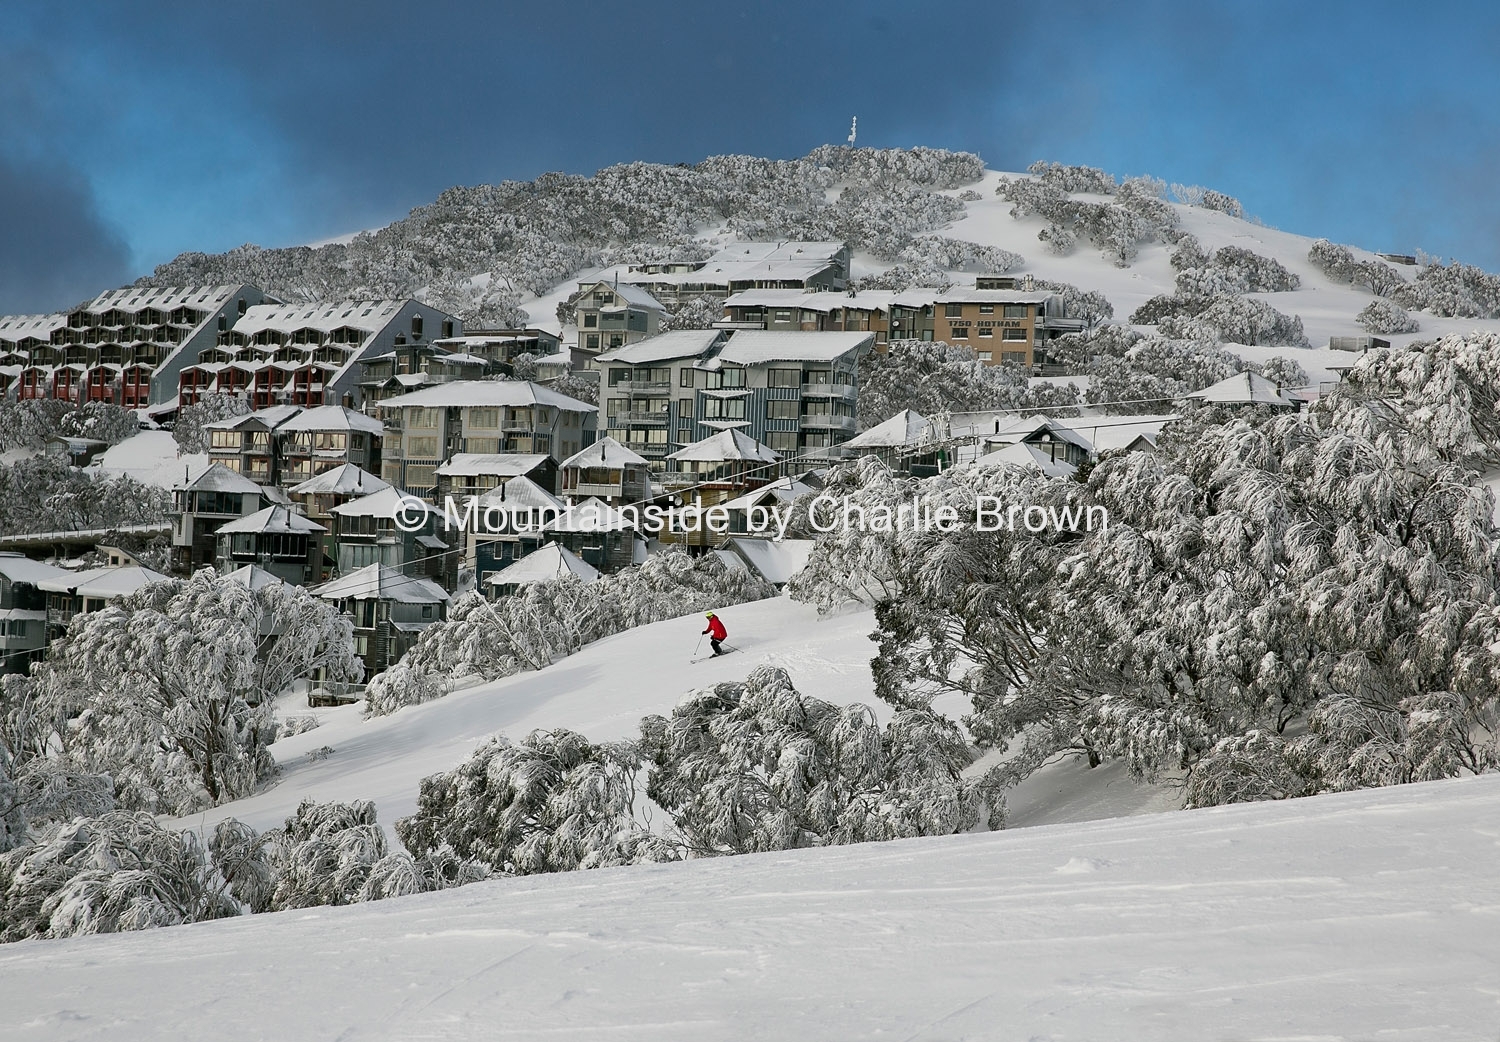 Mt Hotham ski resort, Victoria, Australia